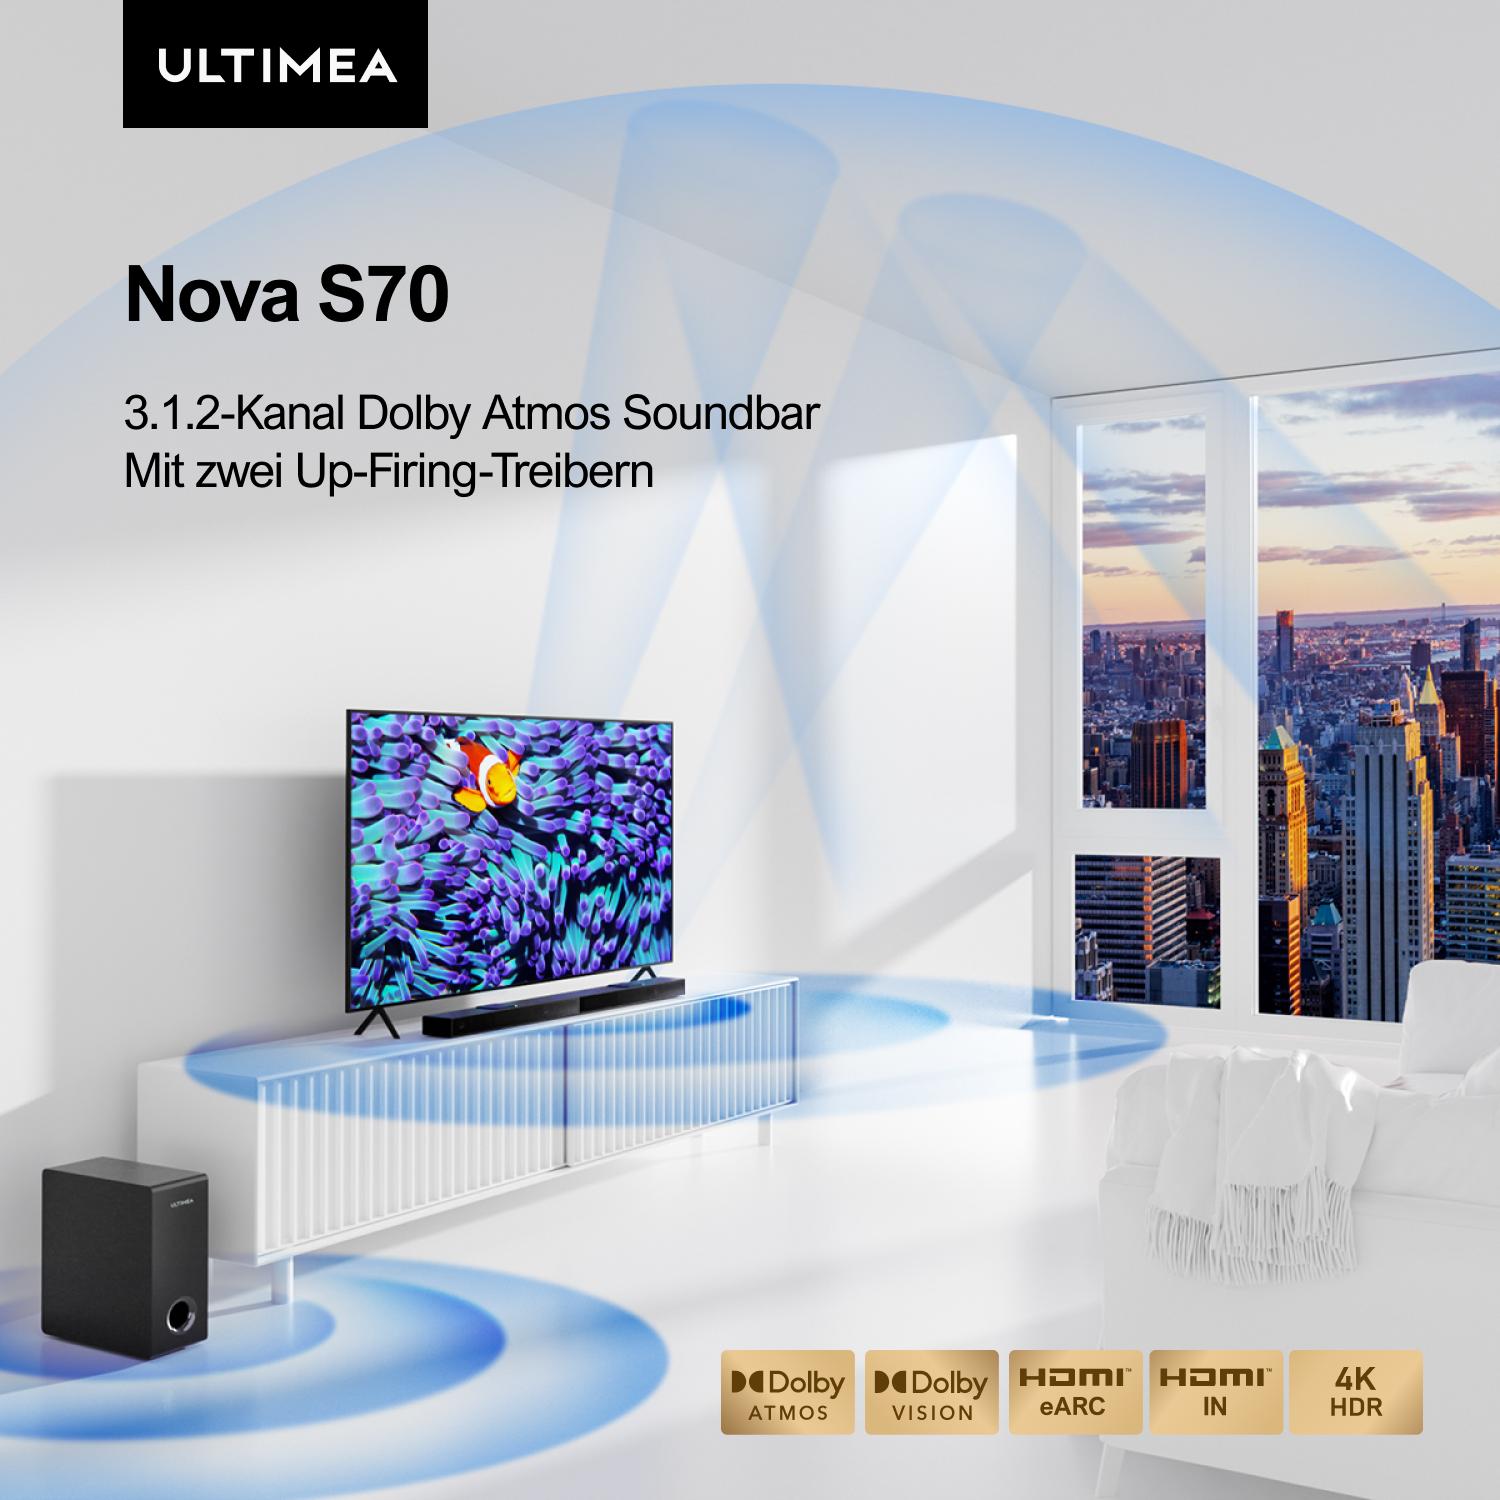 ULTIMEA Nova S70 - 390W, 3.1.2ch Soundbar Schwarz Dolby 2 Atmos Geräte, TV Spitzenleistung für Soundbar, Up-Firing-Treiber